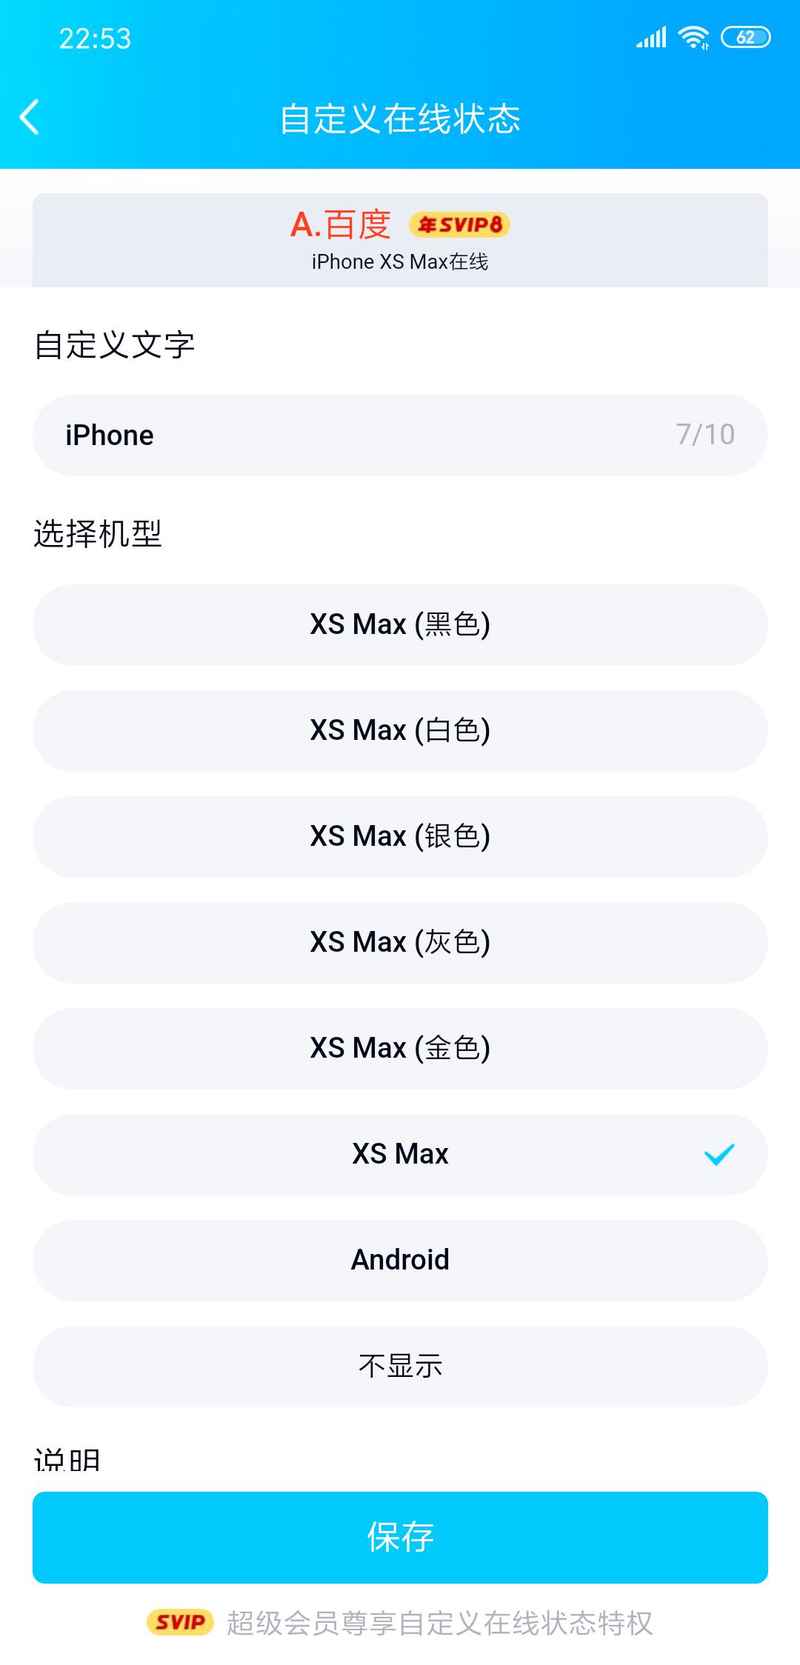 QQ自定义修改iPhone XS MAX,兰博基尼在线